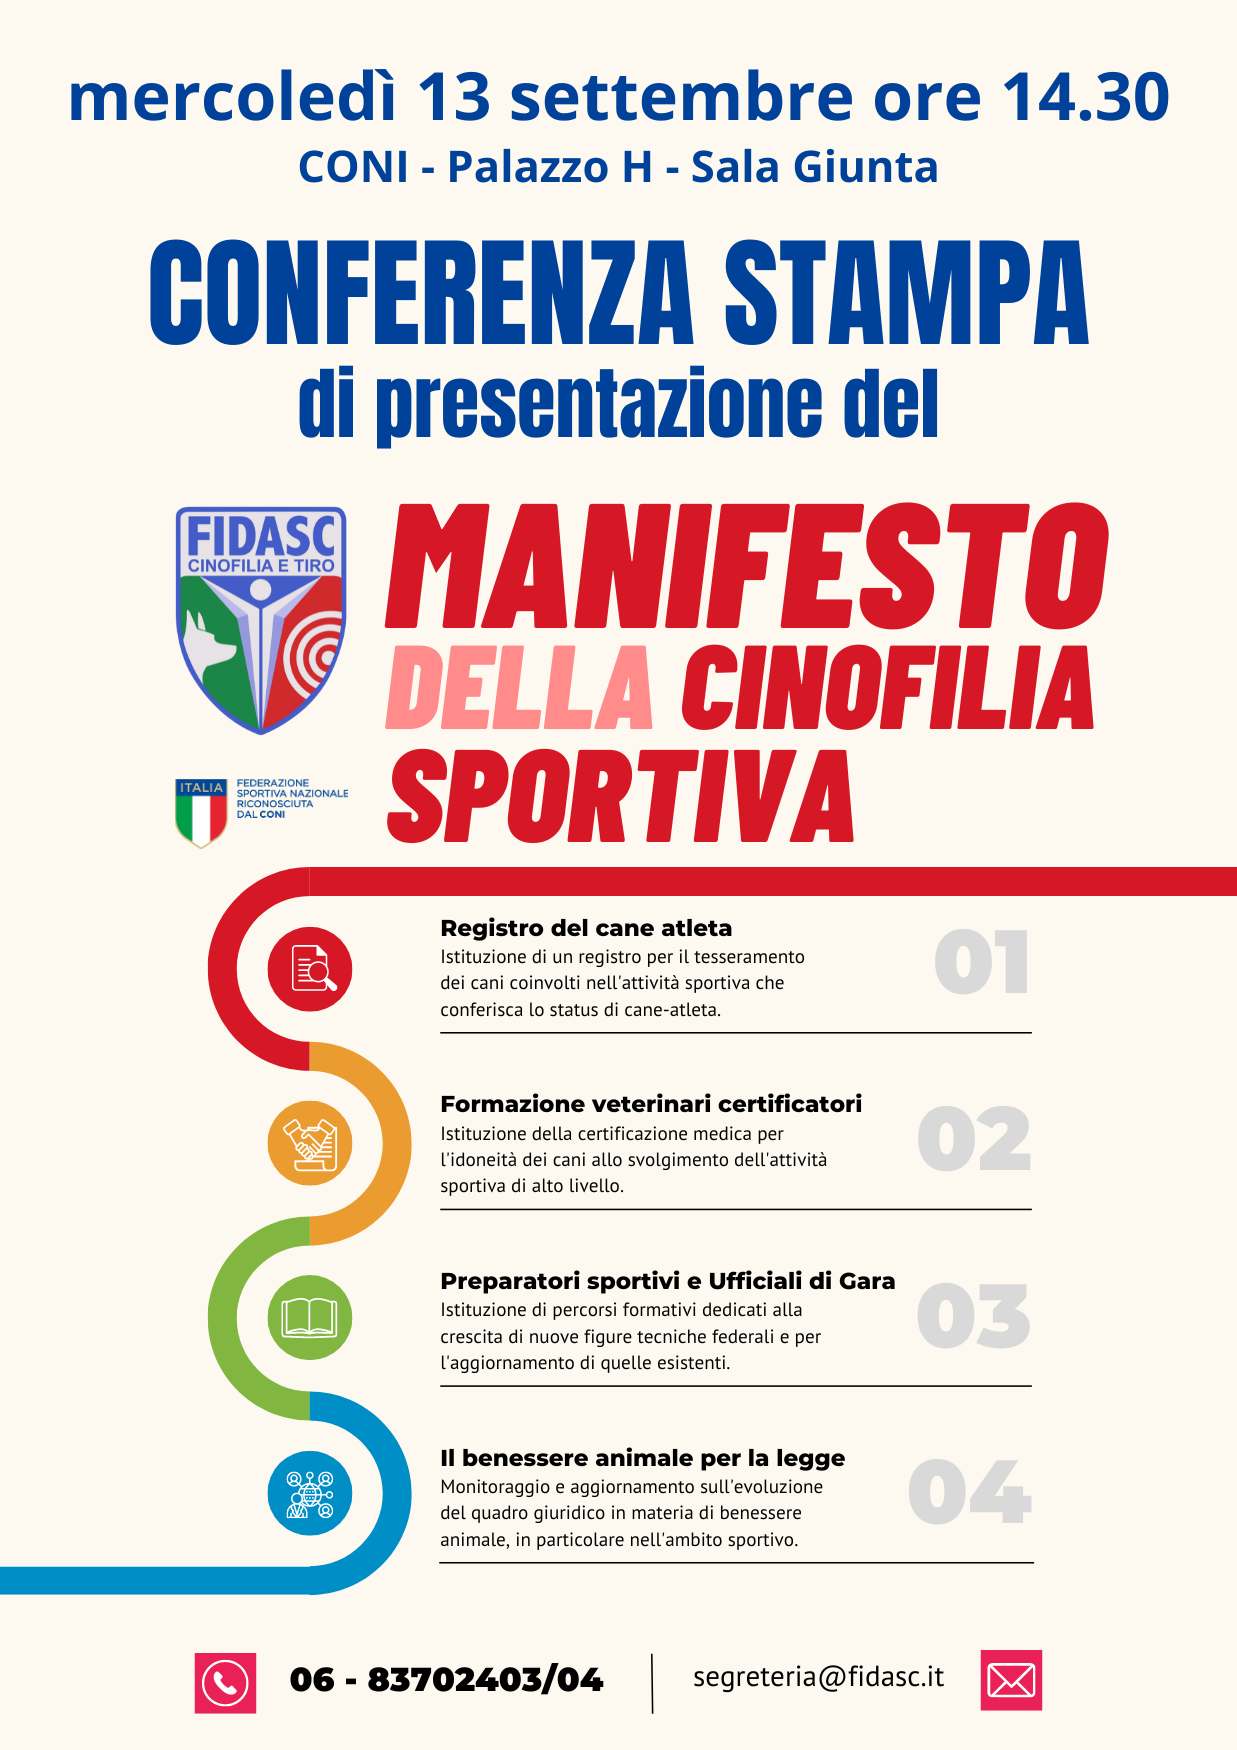 Conferenza stampa di presentazione del Manifesto della Cinofilia Sportiva